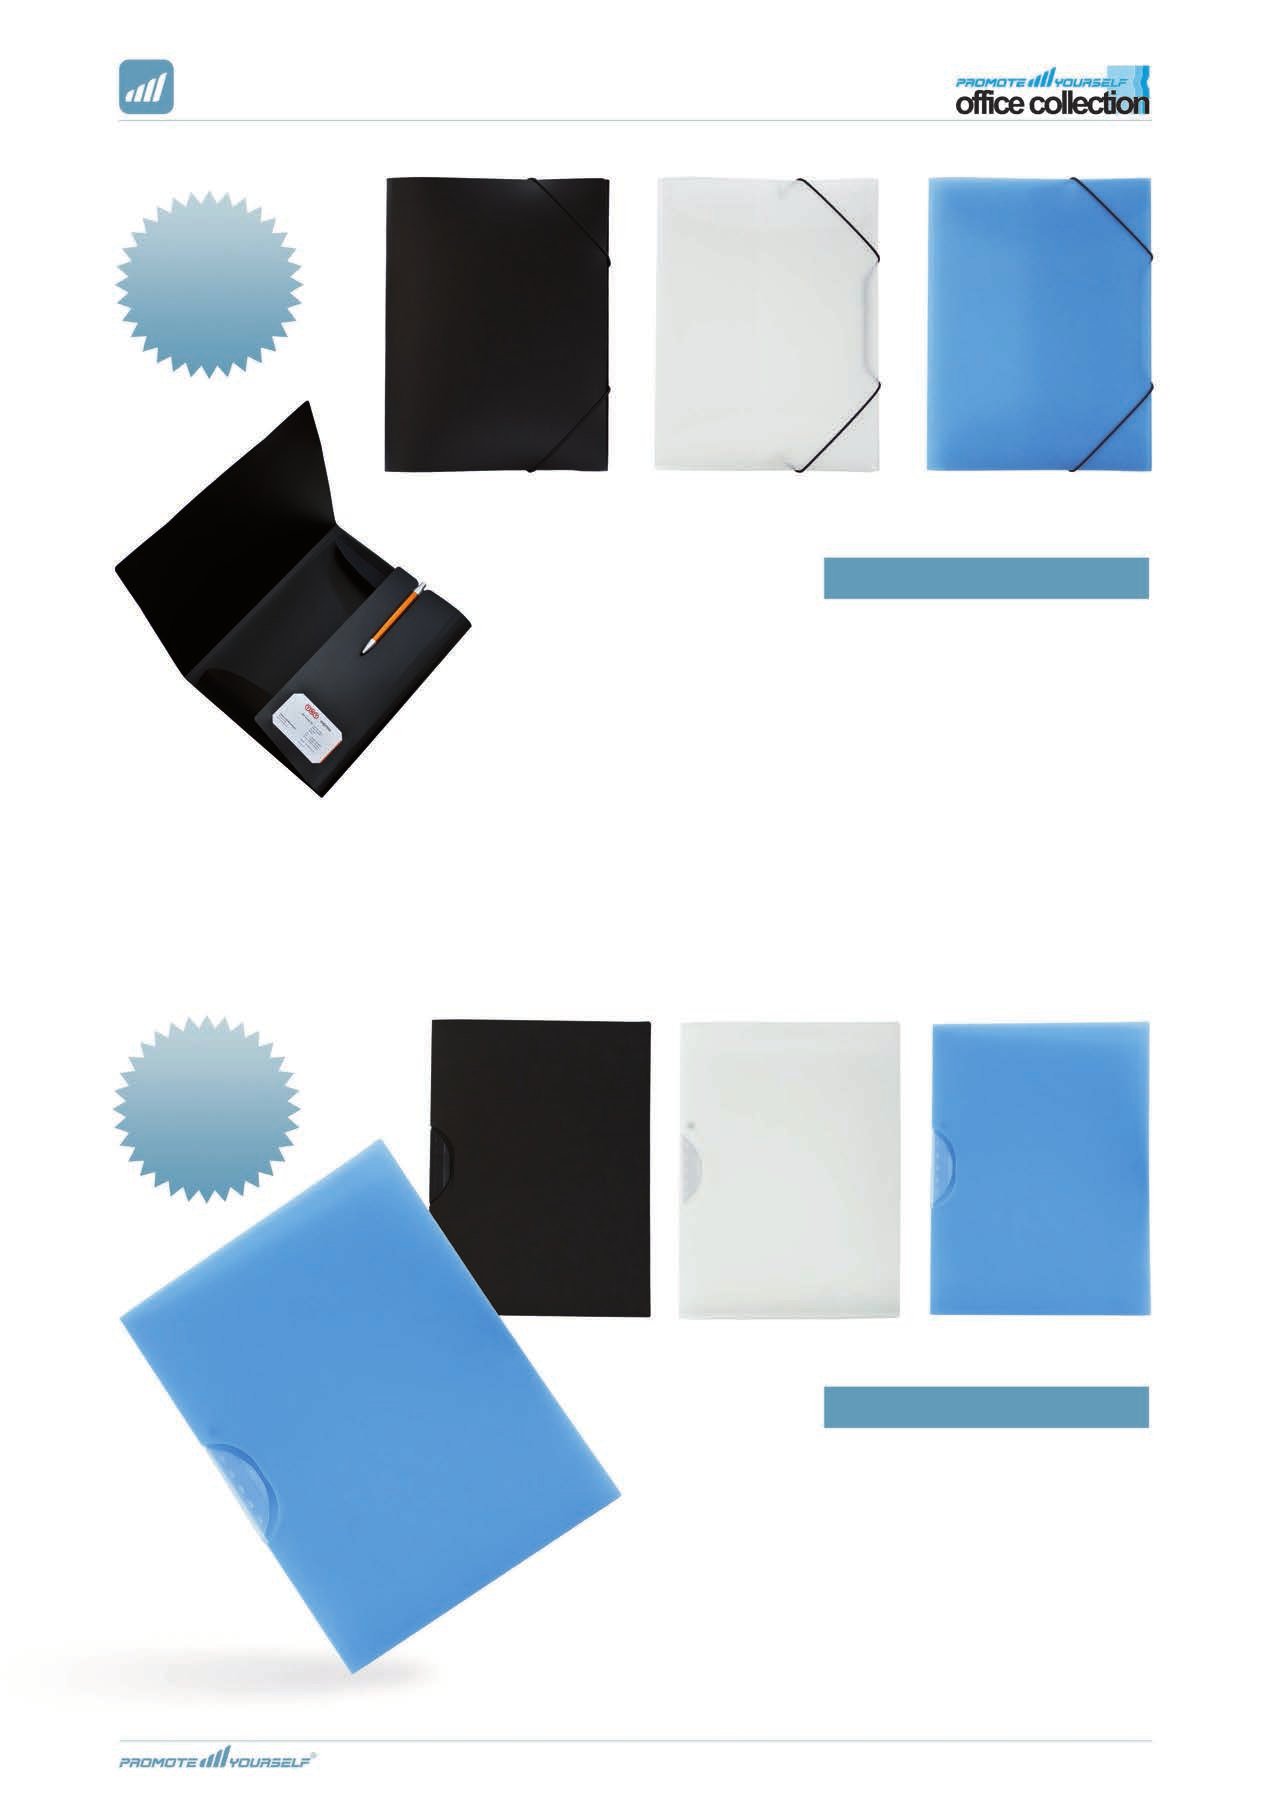 15,00 /st vid 1 000st 610-501 svart (opak) 610-500 vit (frostad) 610-508 blå (frostad) Snoddmapp A4 (pp) Snoddmapp A4 i PP-plast med tre klaffar, visitkortsficka (i kreditkortsstorlek) samt en mycket